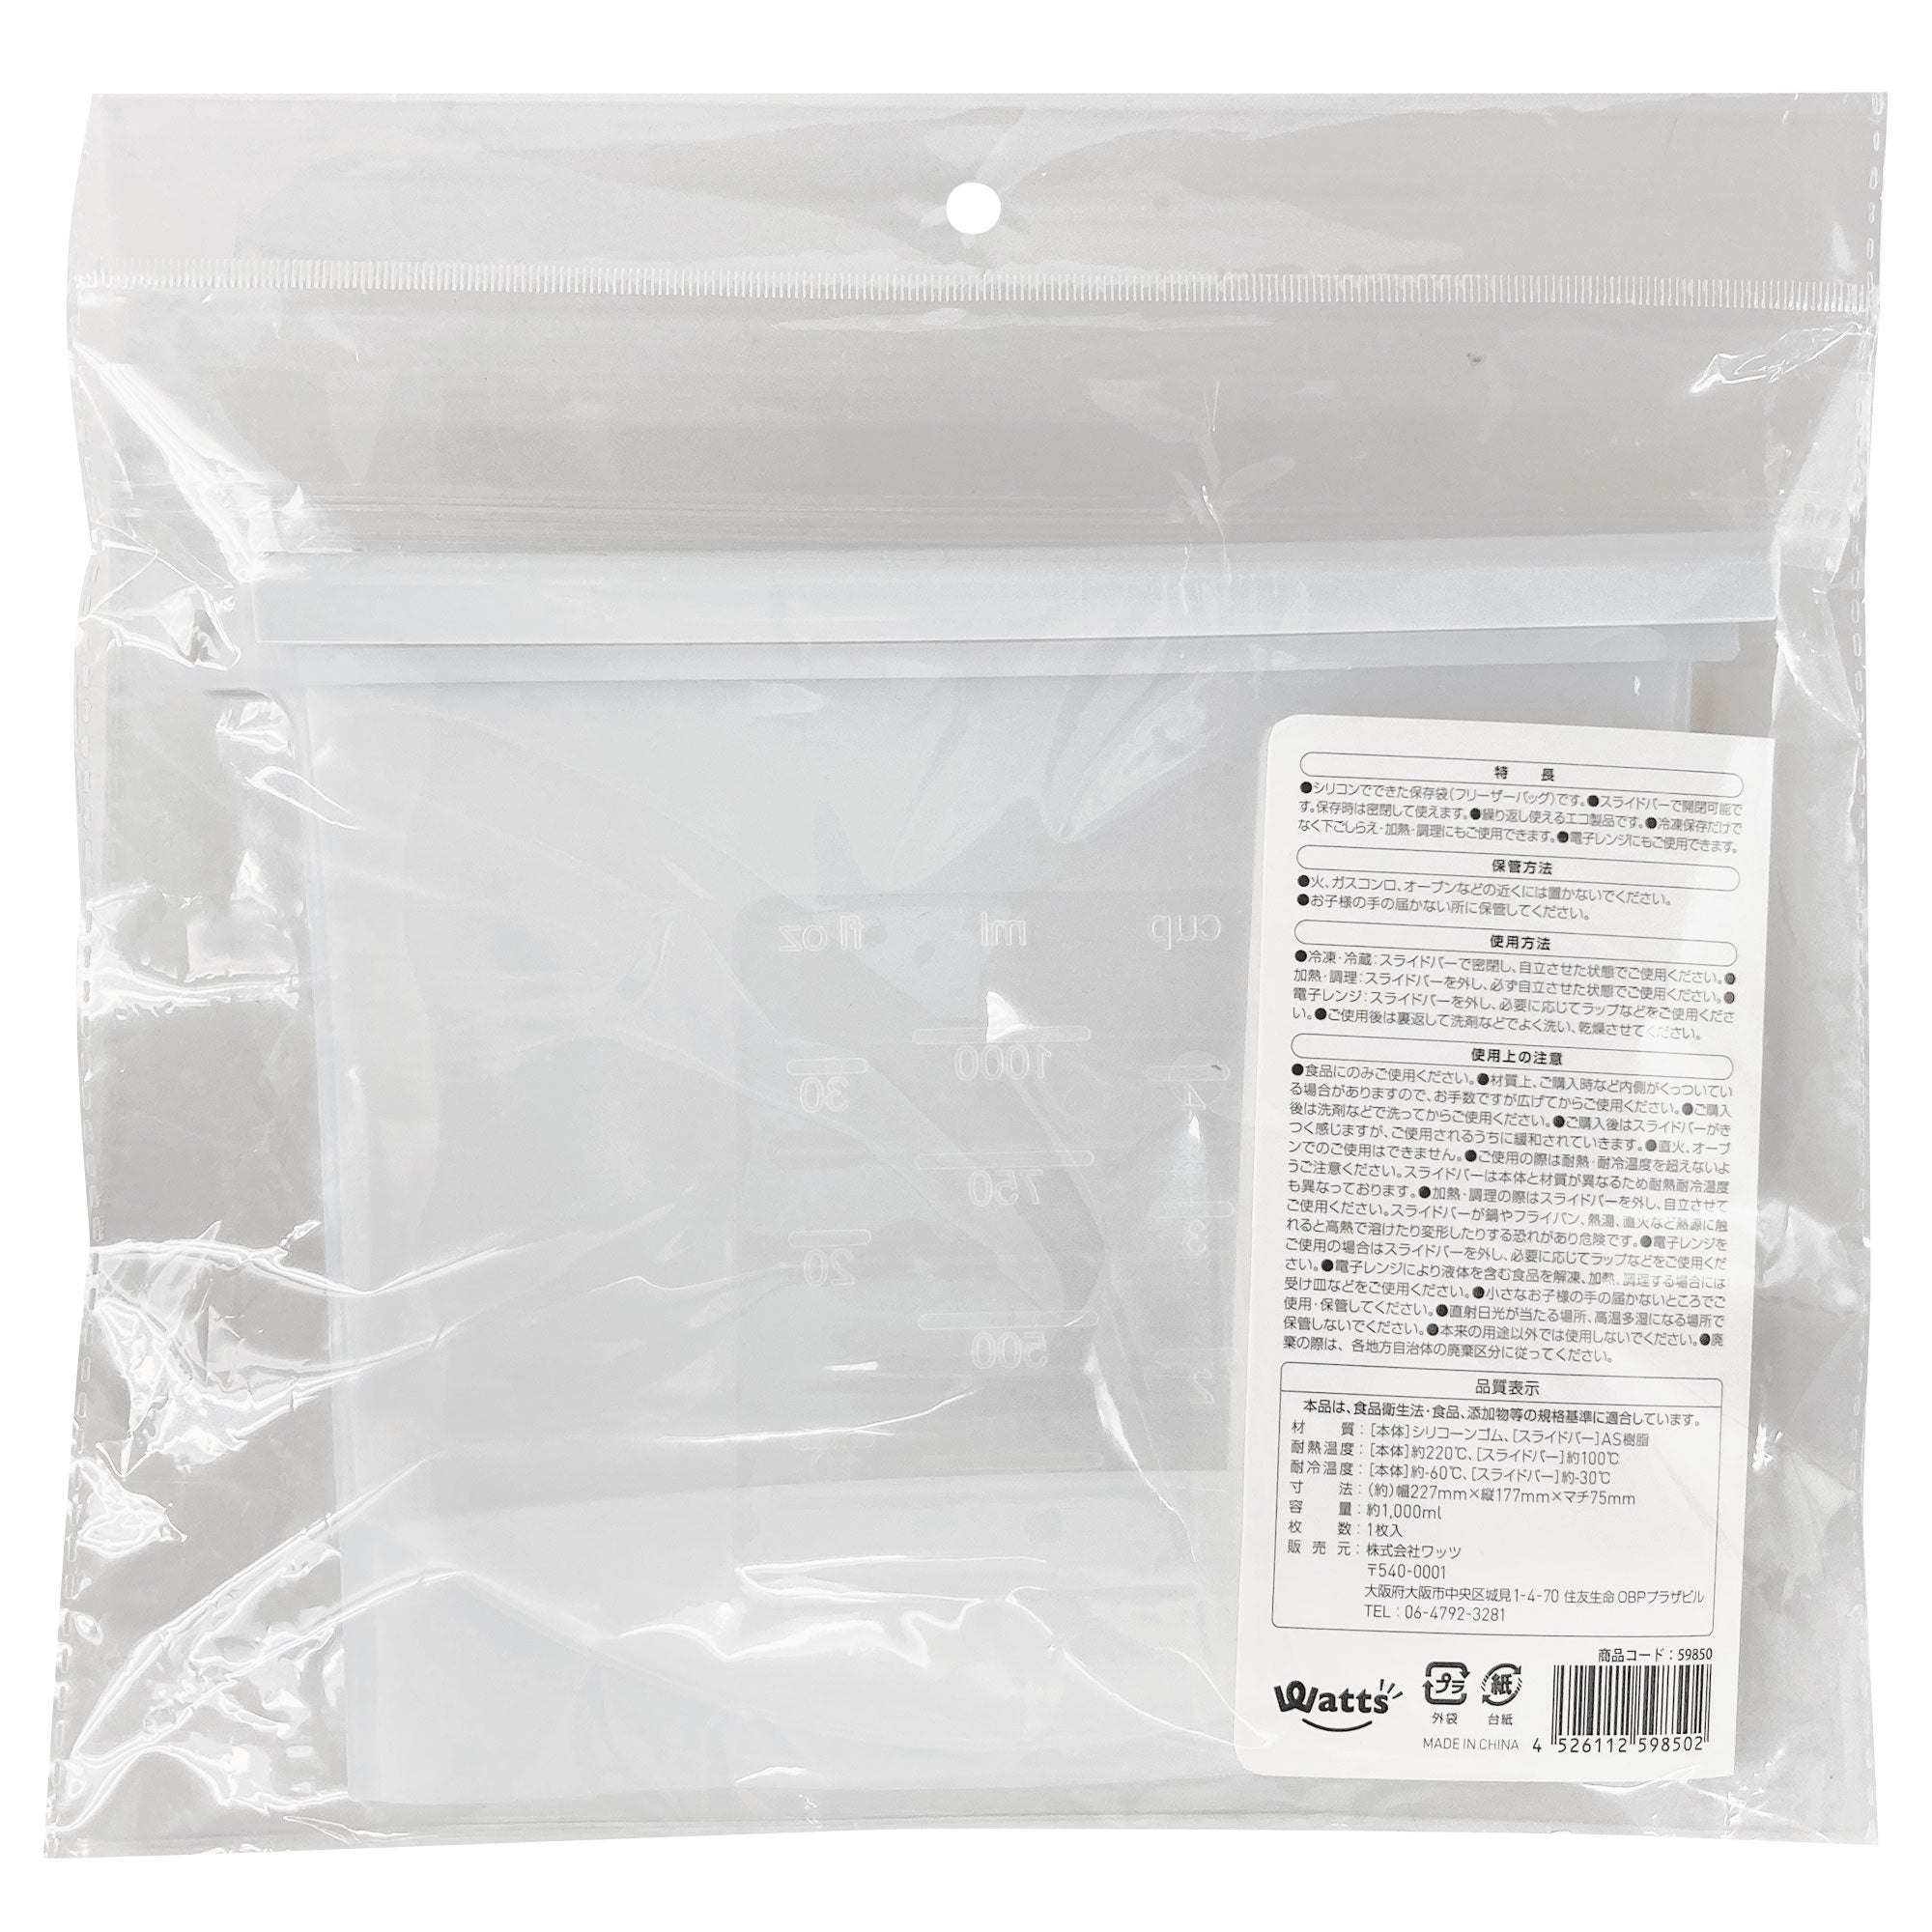 ジップバッグ 食品保存袋 ストックバッグ Tokinone PB.シリコンフリーザーバッグ 1000ml 9001/059850